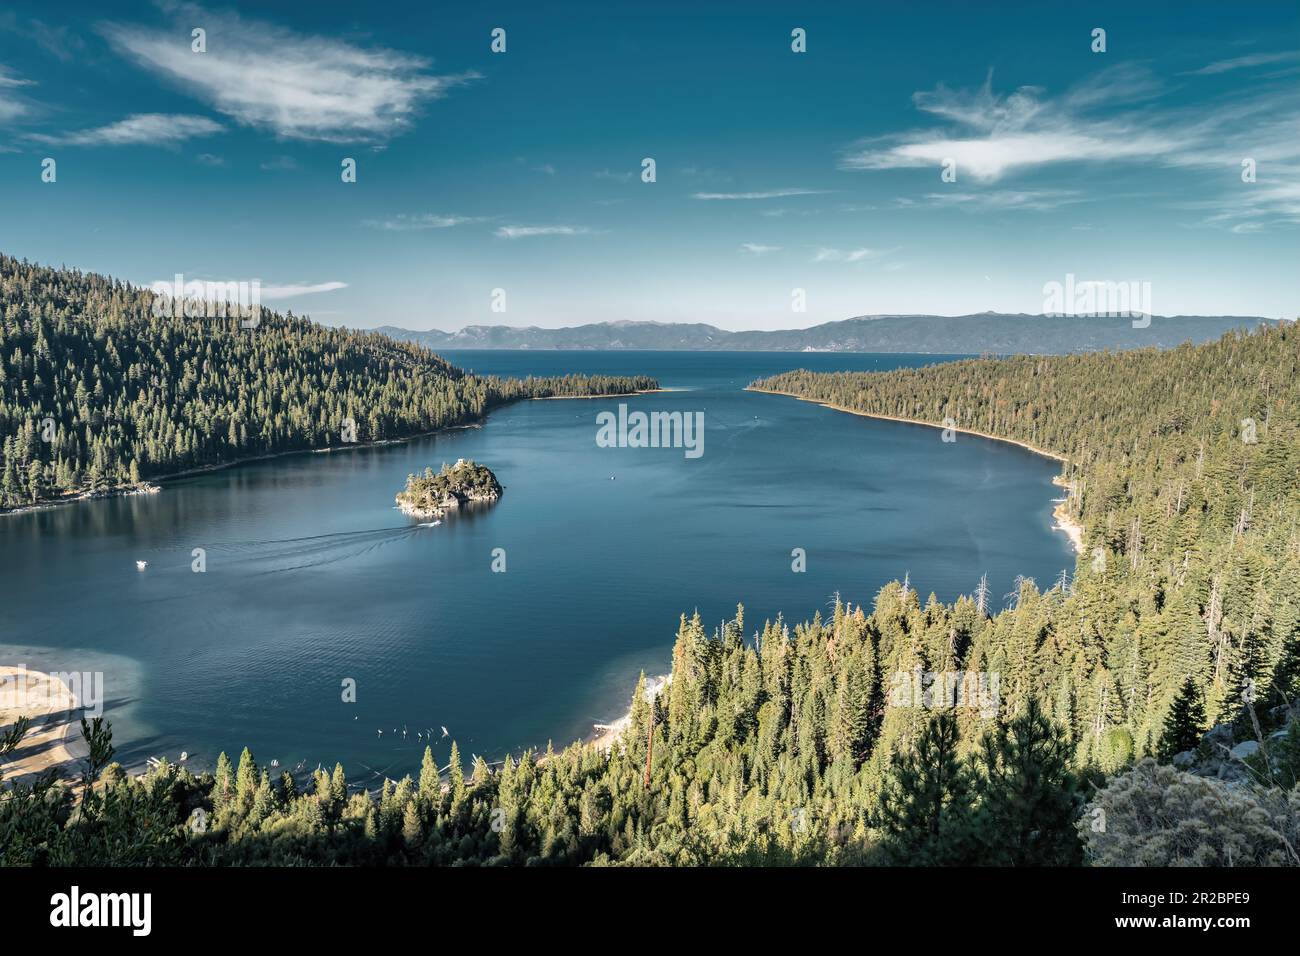 Emerald Bay at Lake Tahoe, California, USA Stock Photo